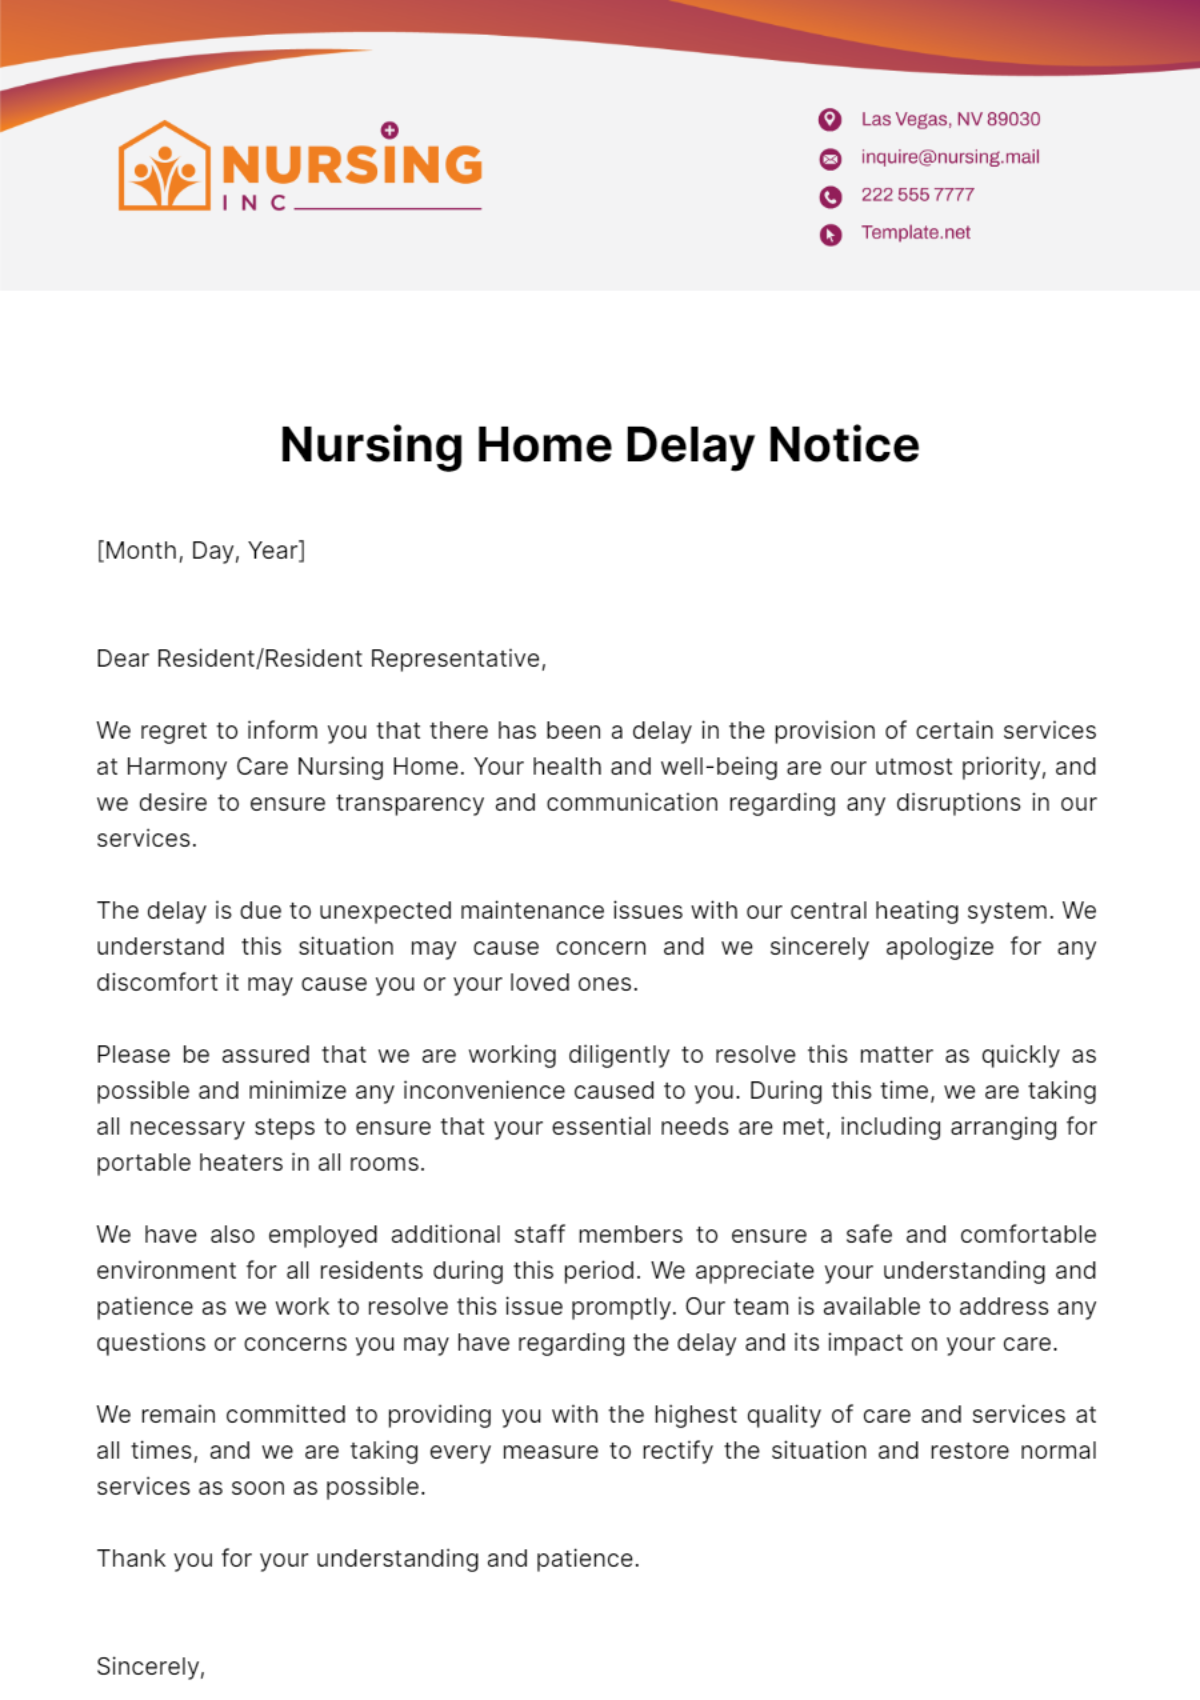 Nursing Home Delay Notice Template